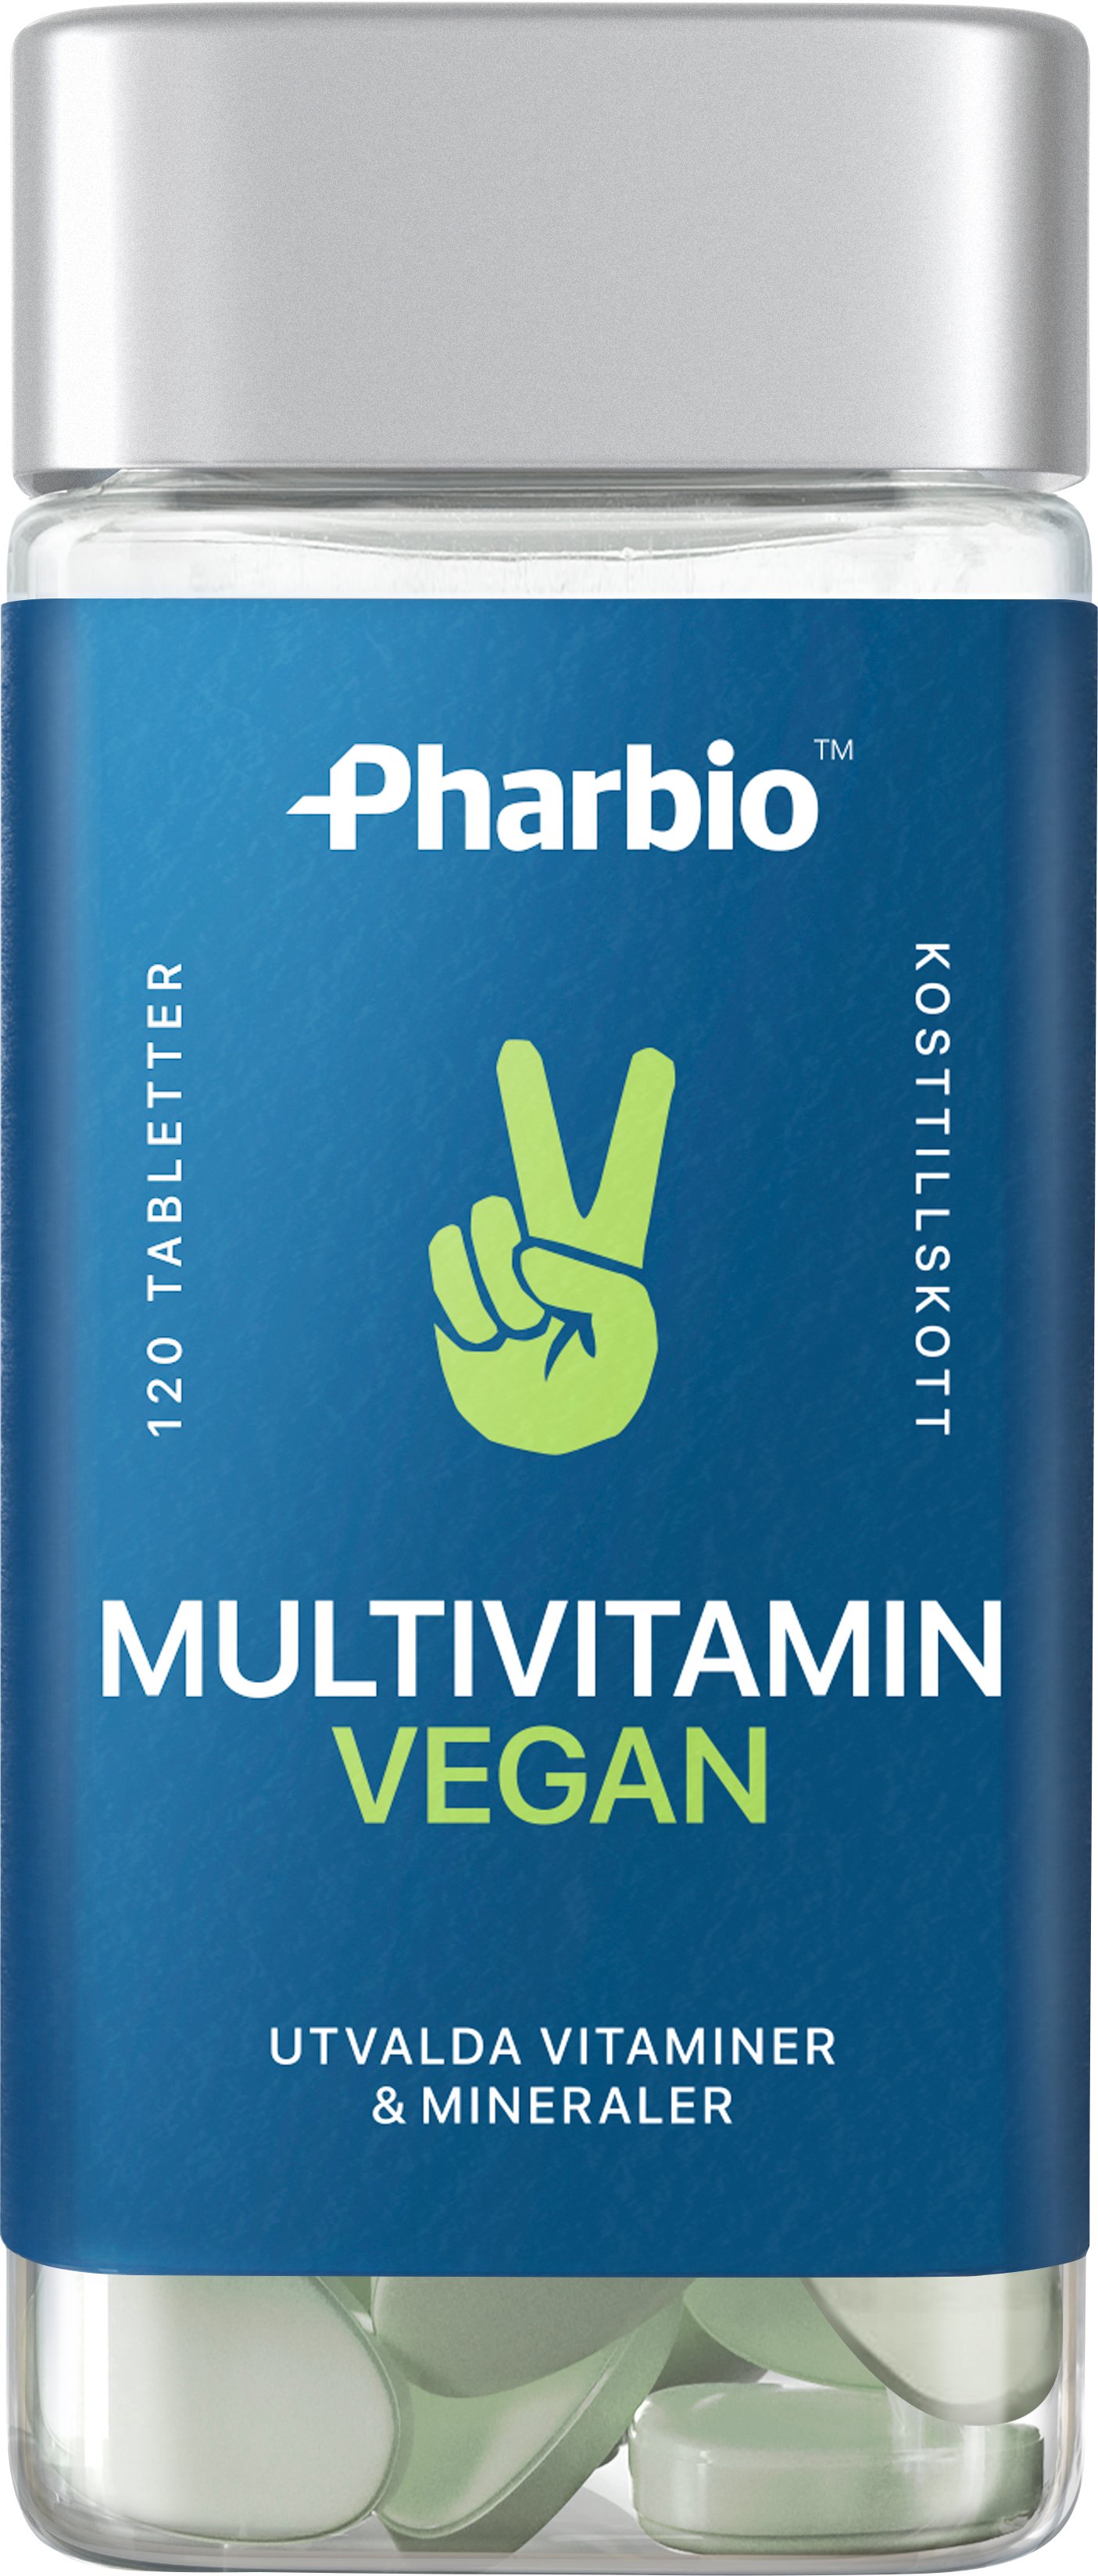 Pharbio Multivitamin Vegan 120 tabletter